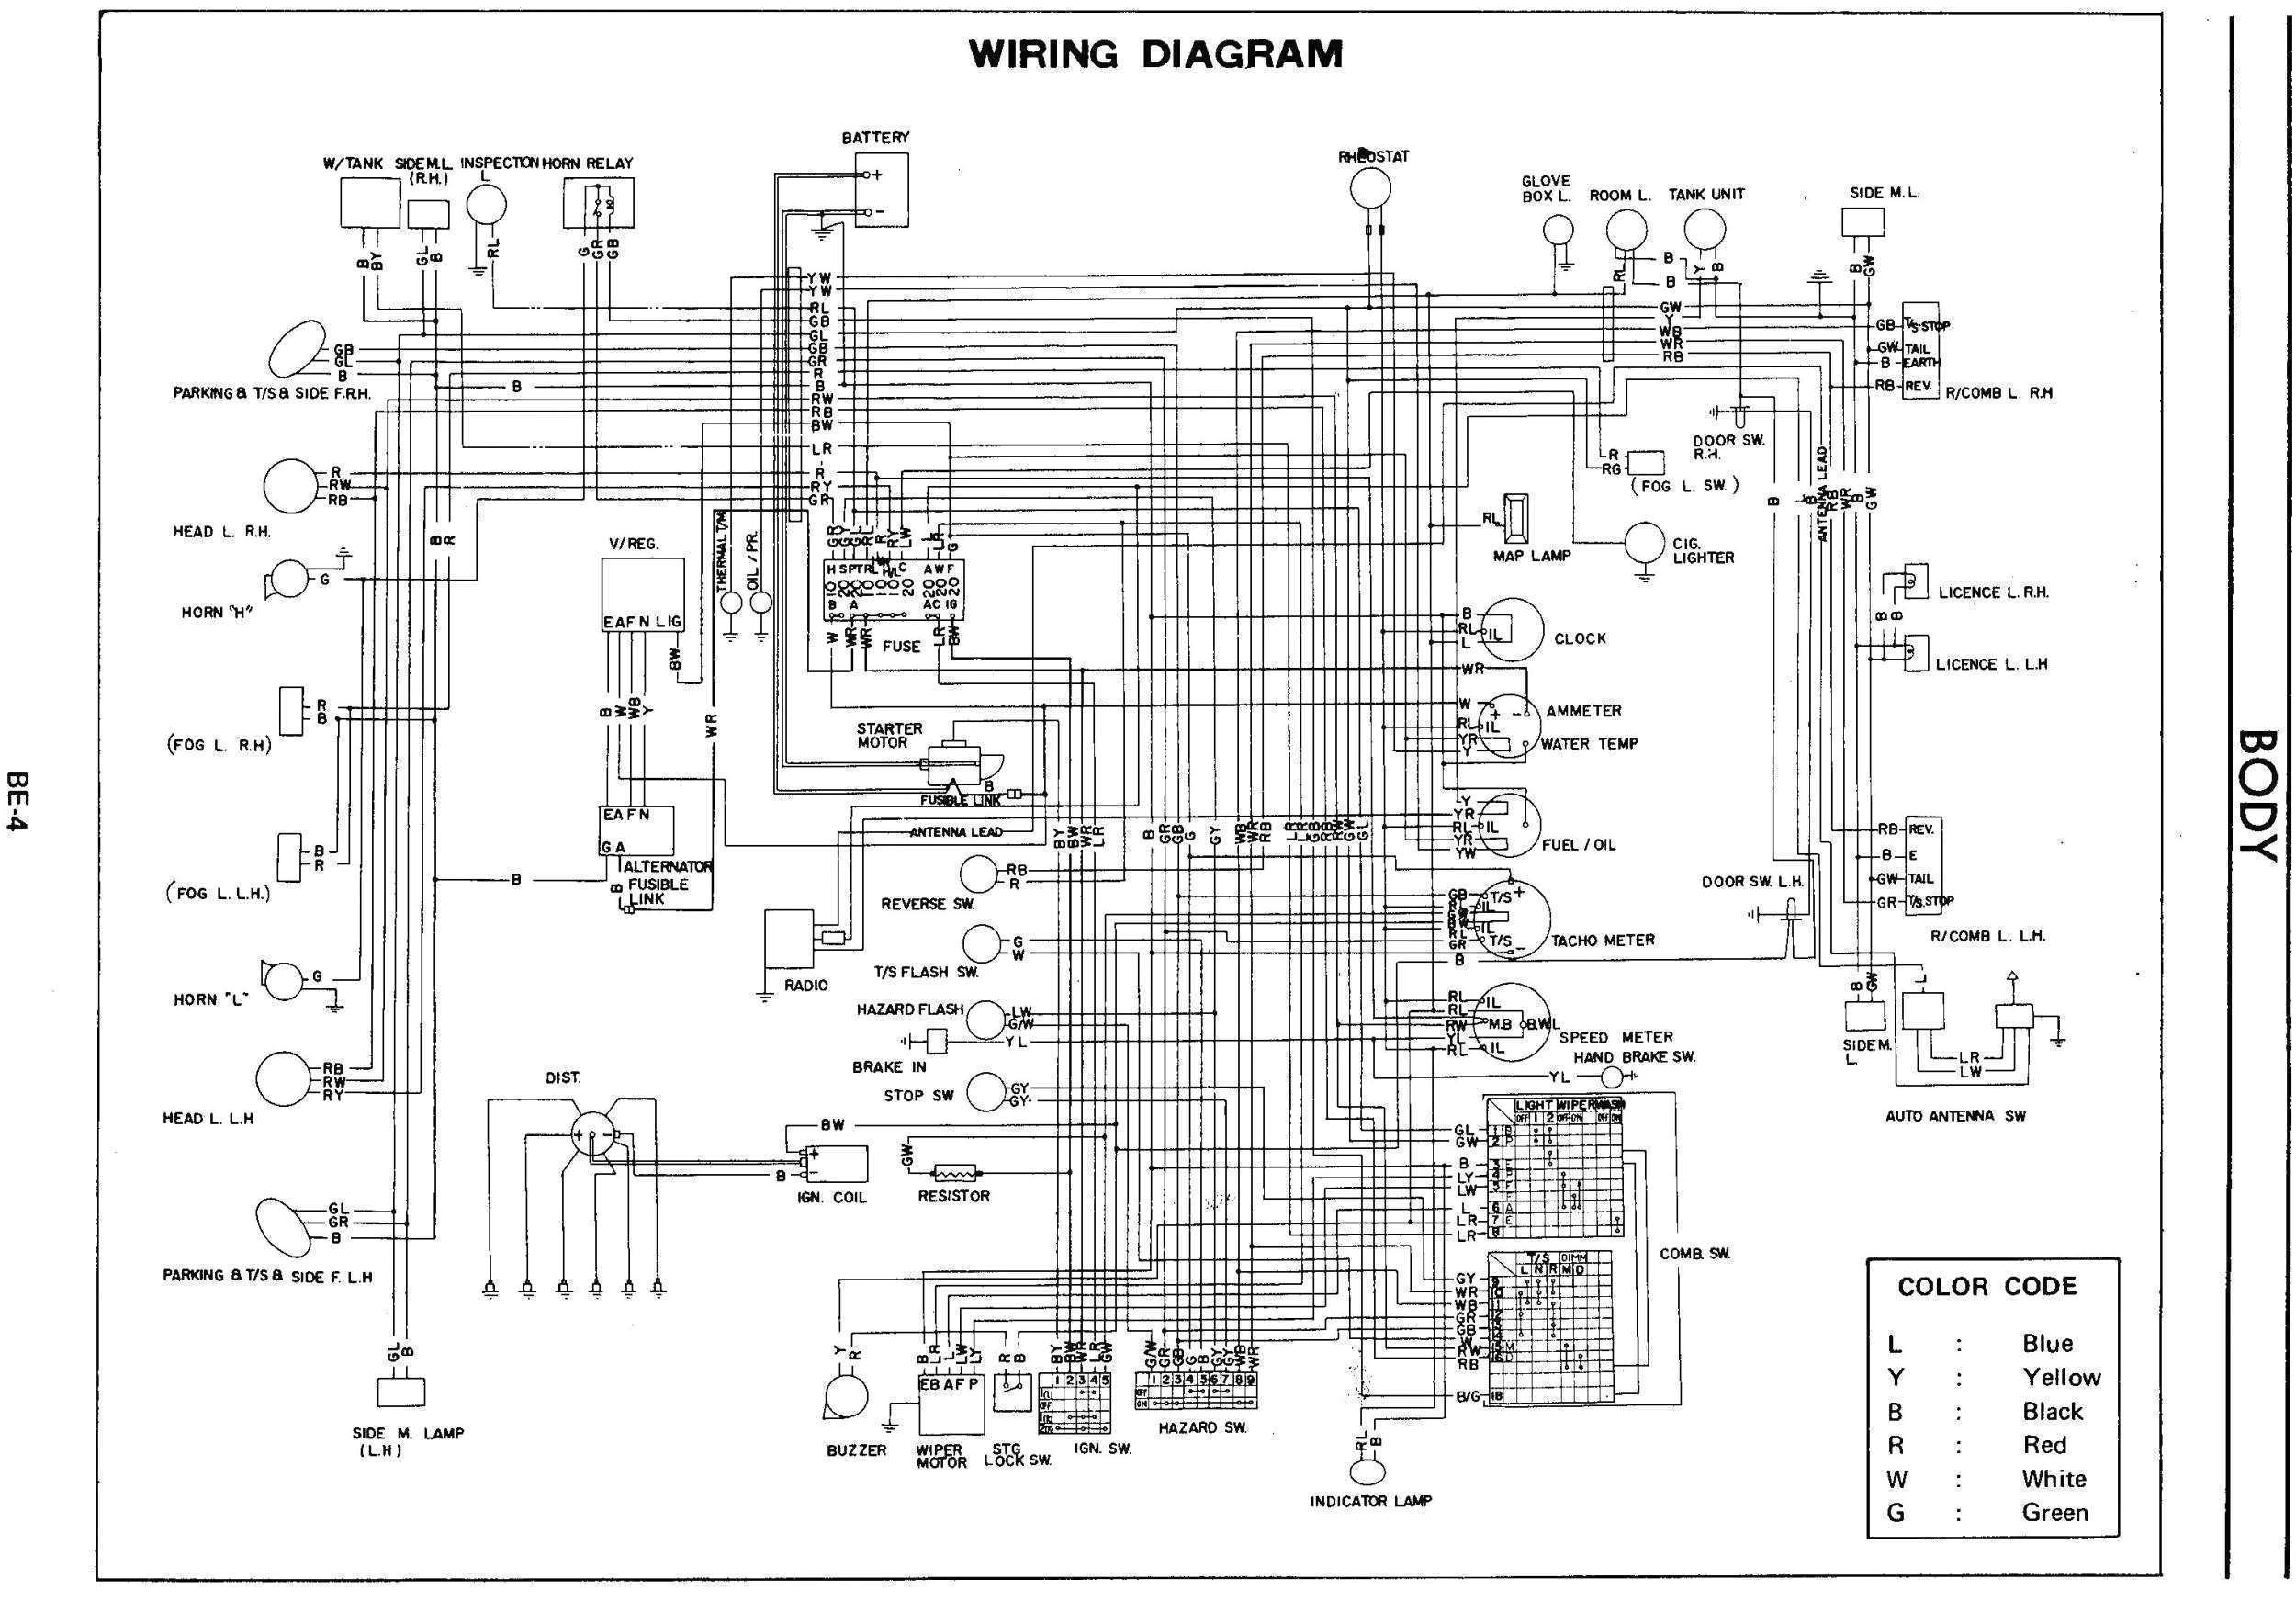 cooper lighting wiring diagrams blog wiring diagram mini cooper lighting wiring diagrams